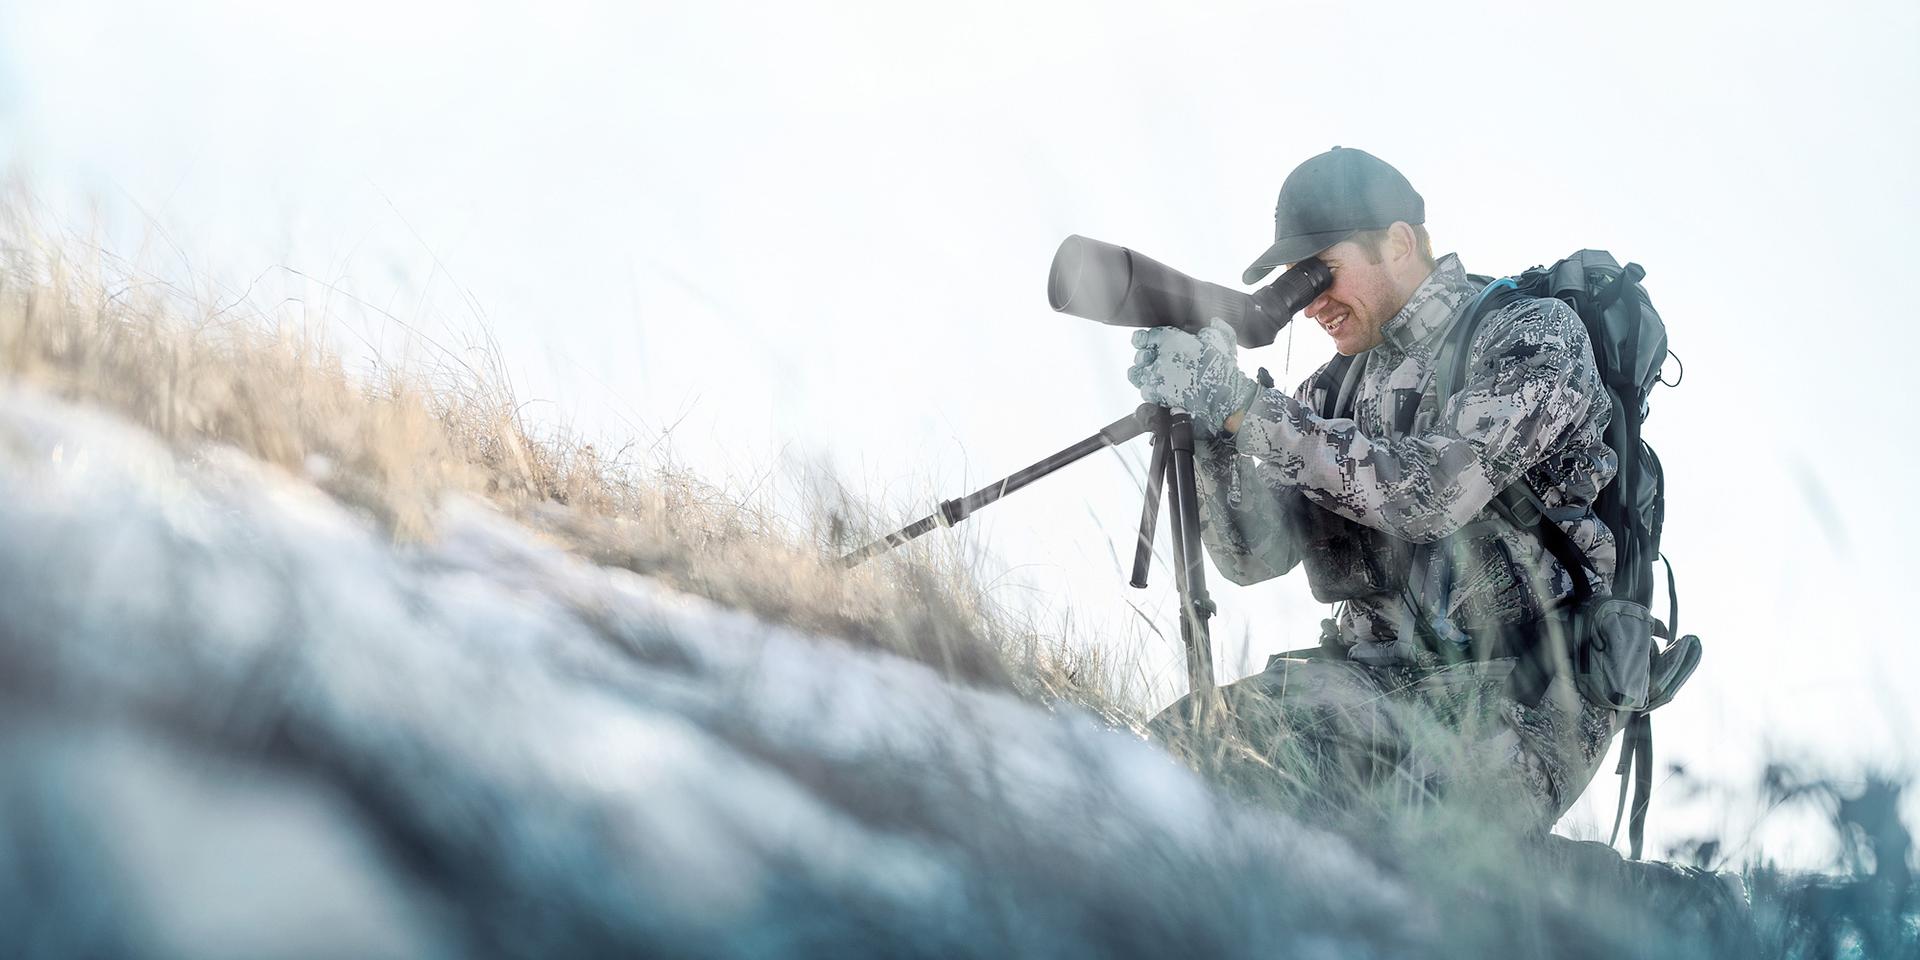 Do progressive lenses work for hunters? 